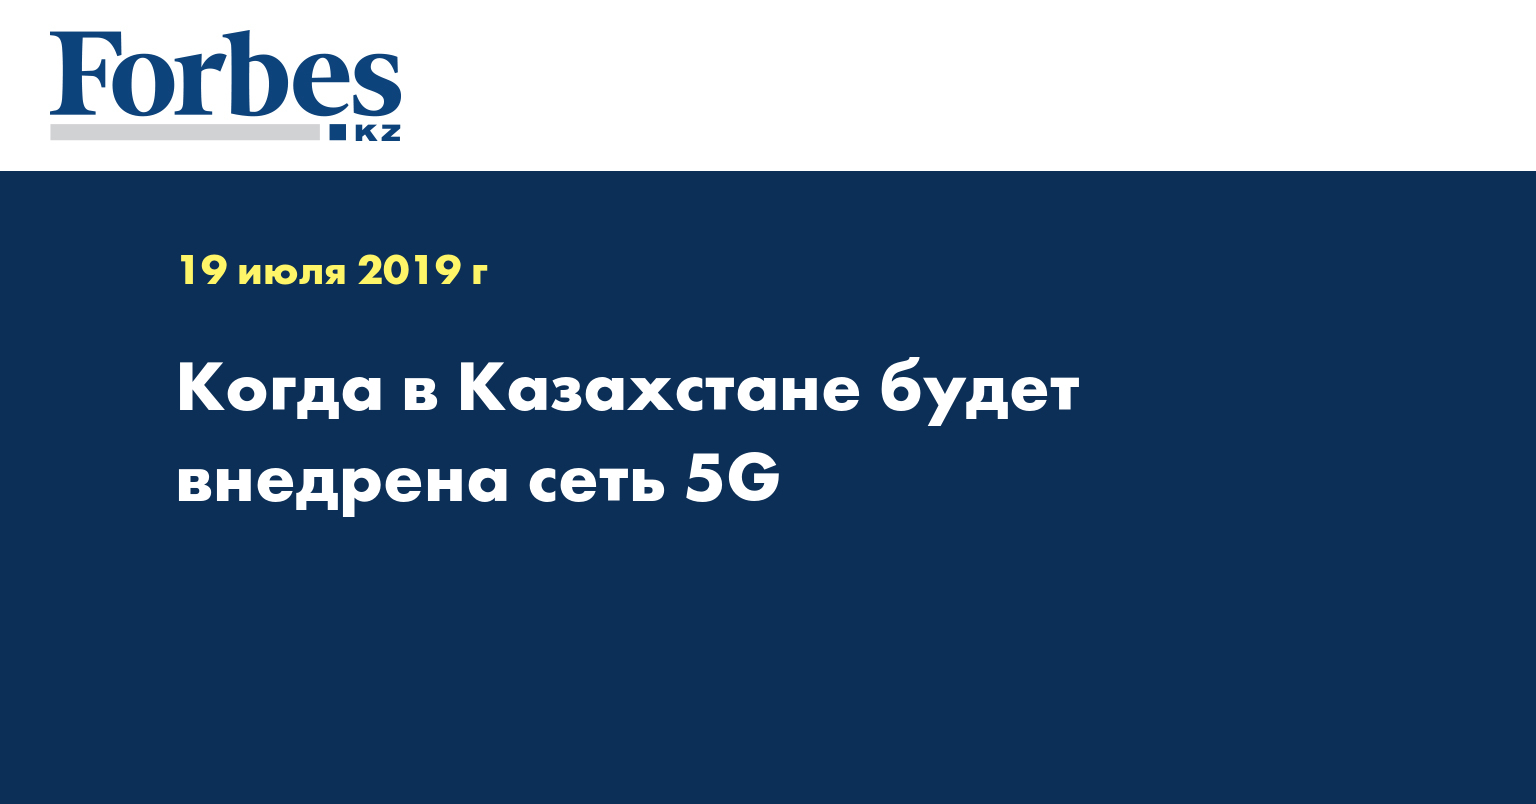 Когда в Казахстане будет внедрена сеть 5G